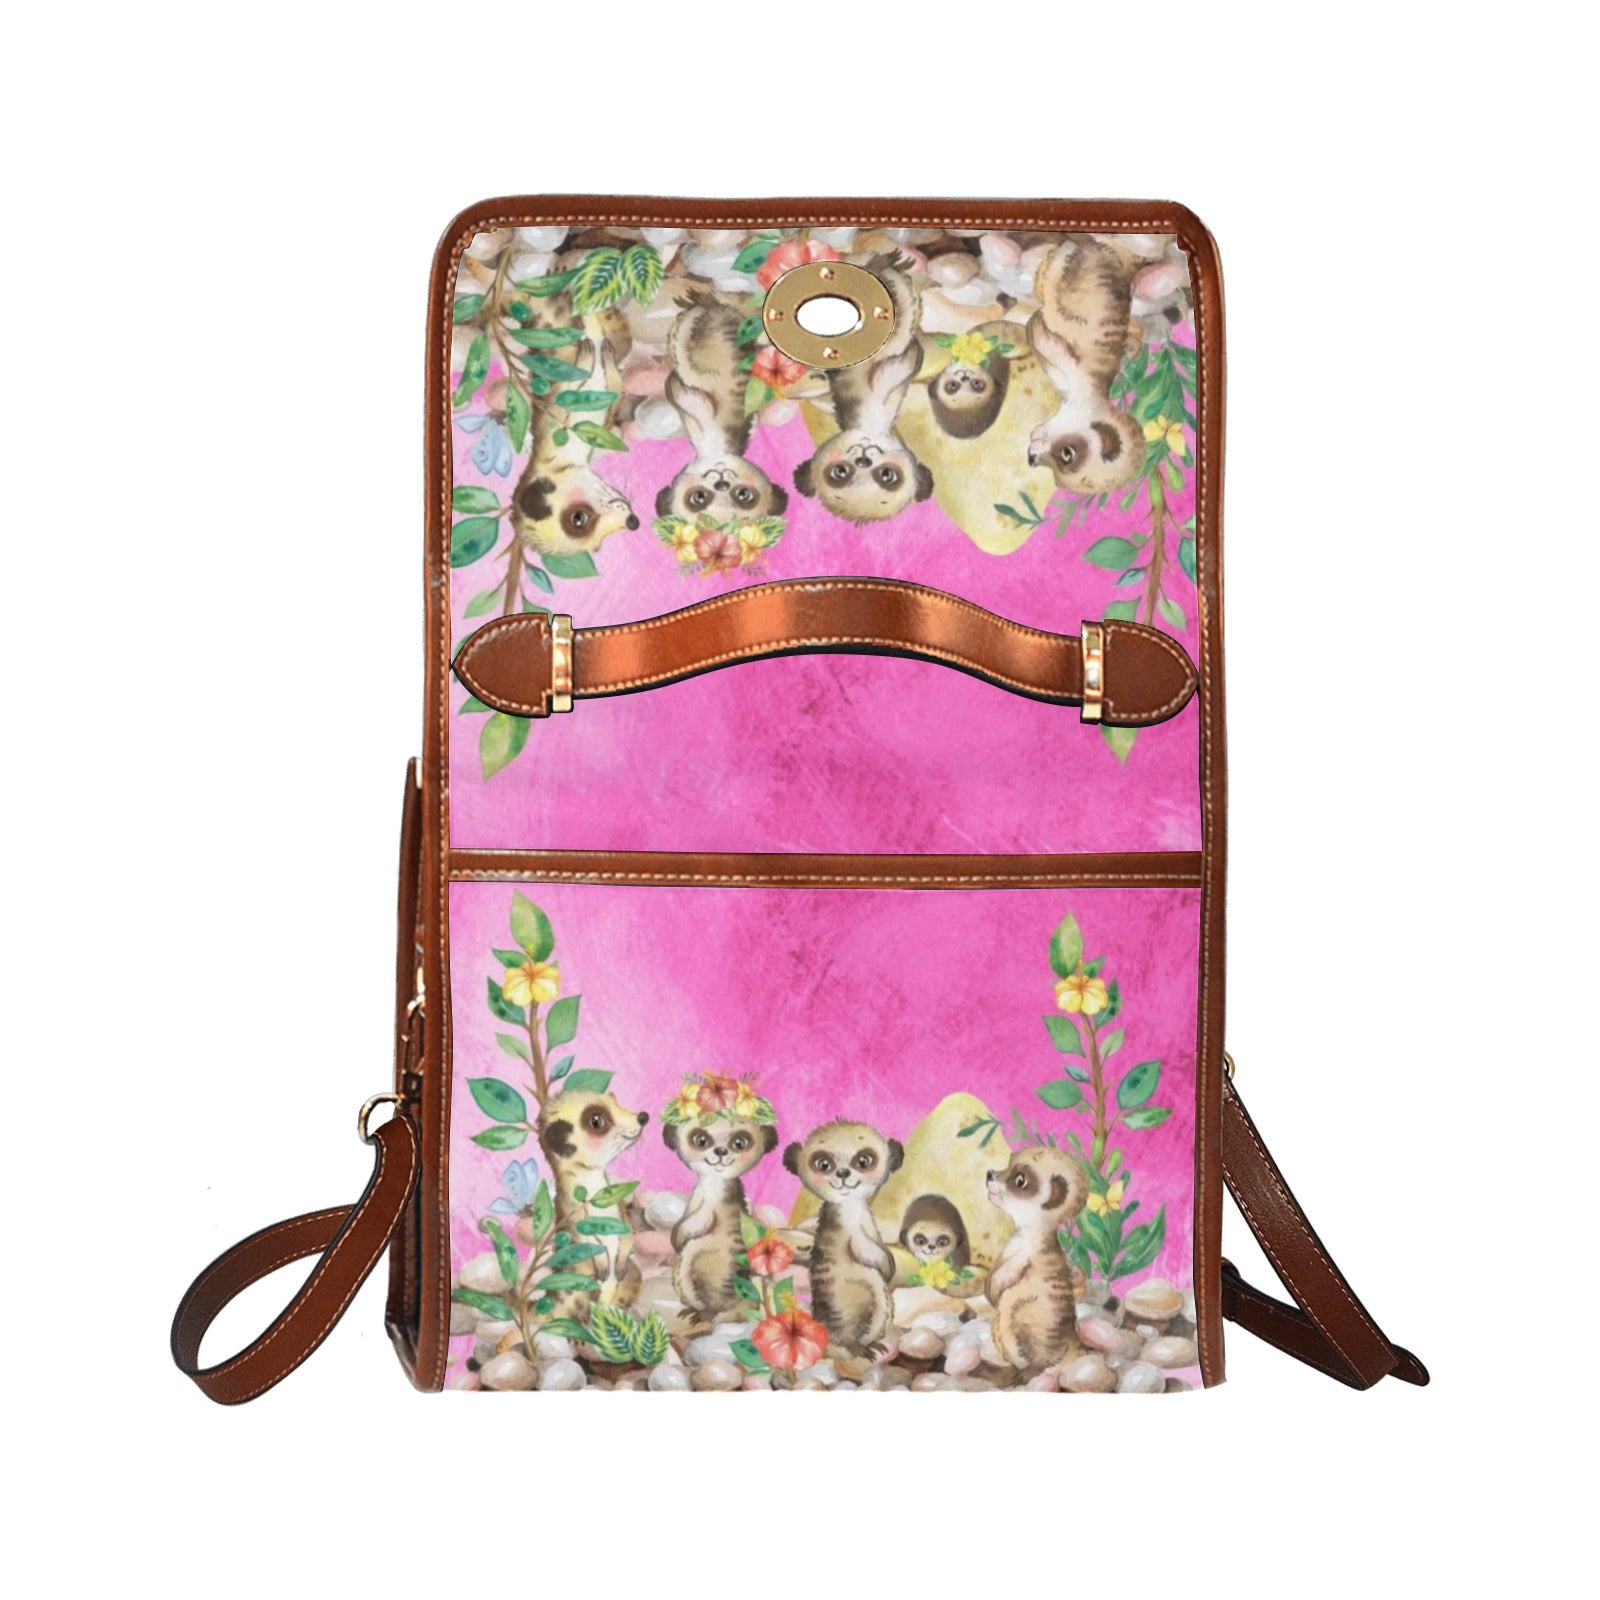 Meerkats - Waterproof Canvas Handbag